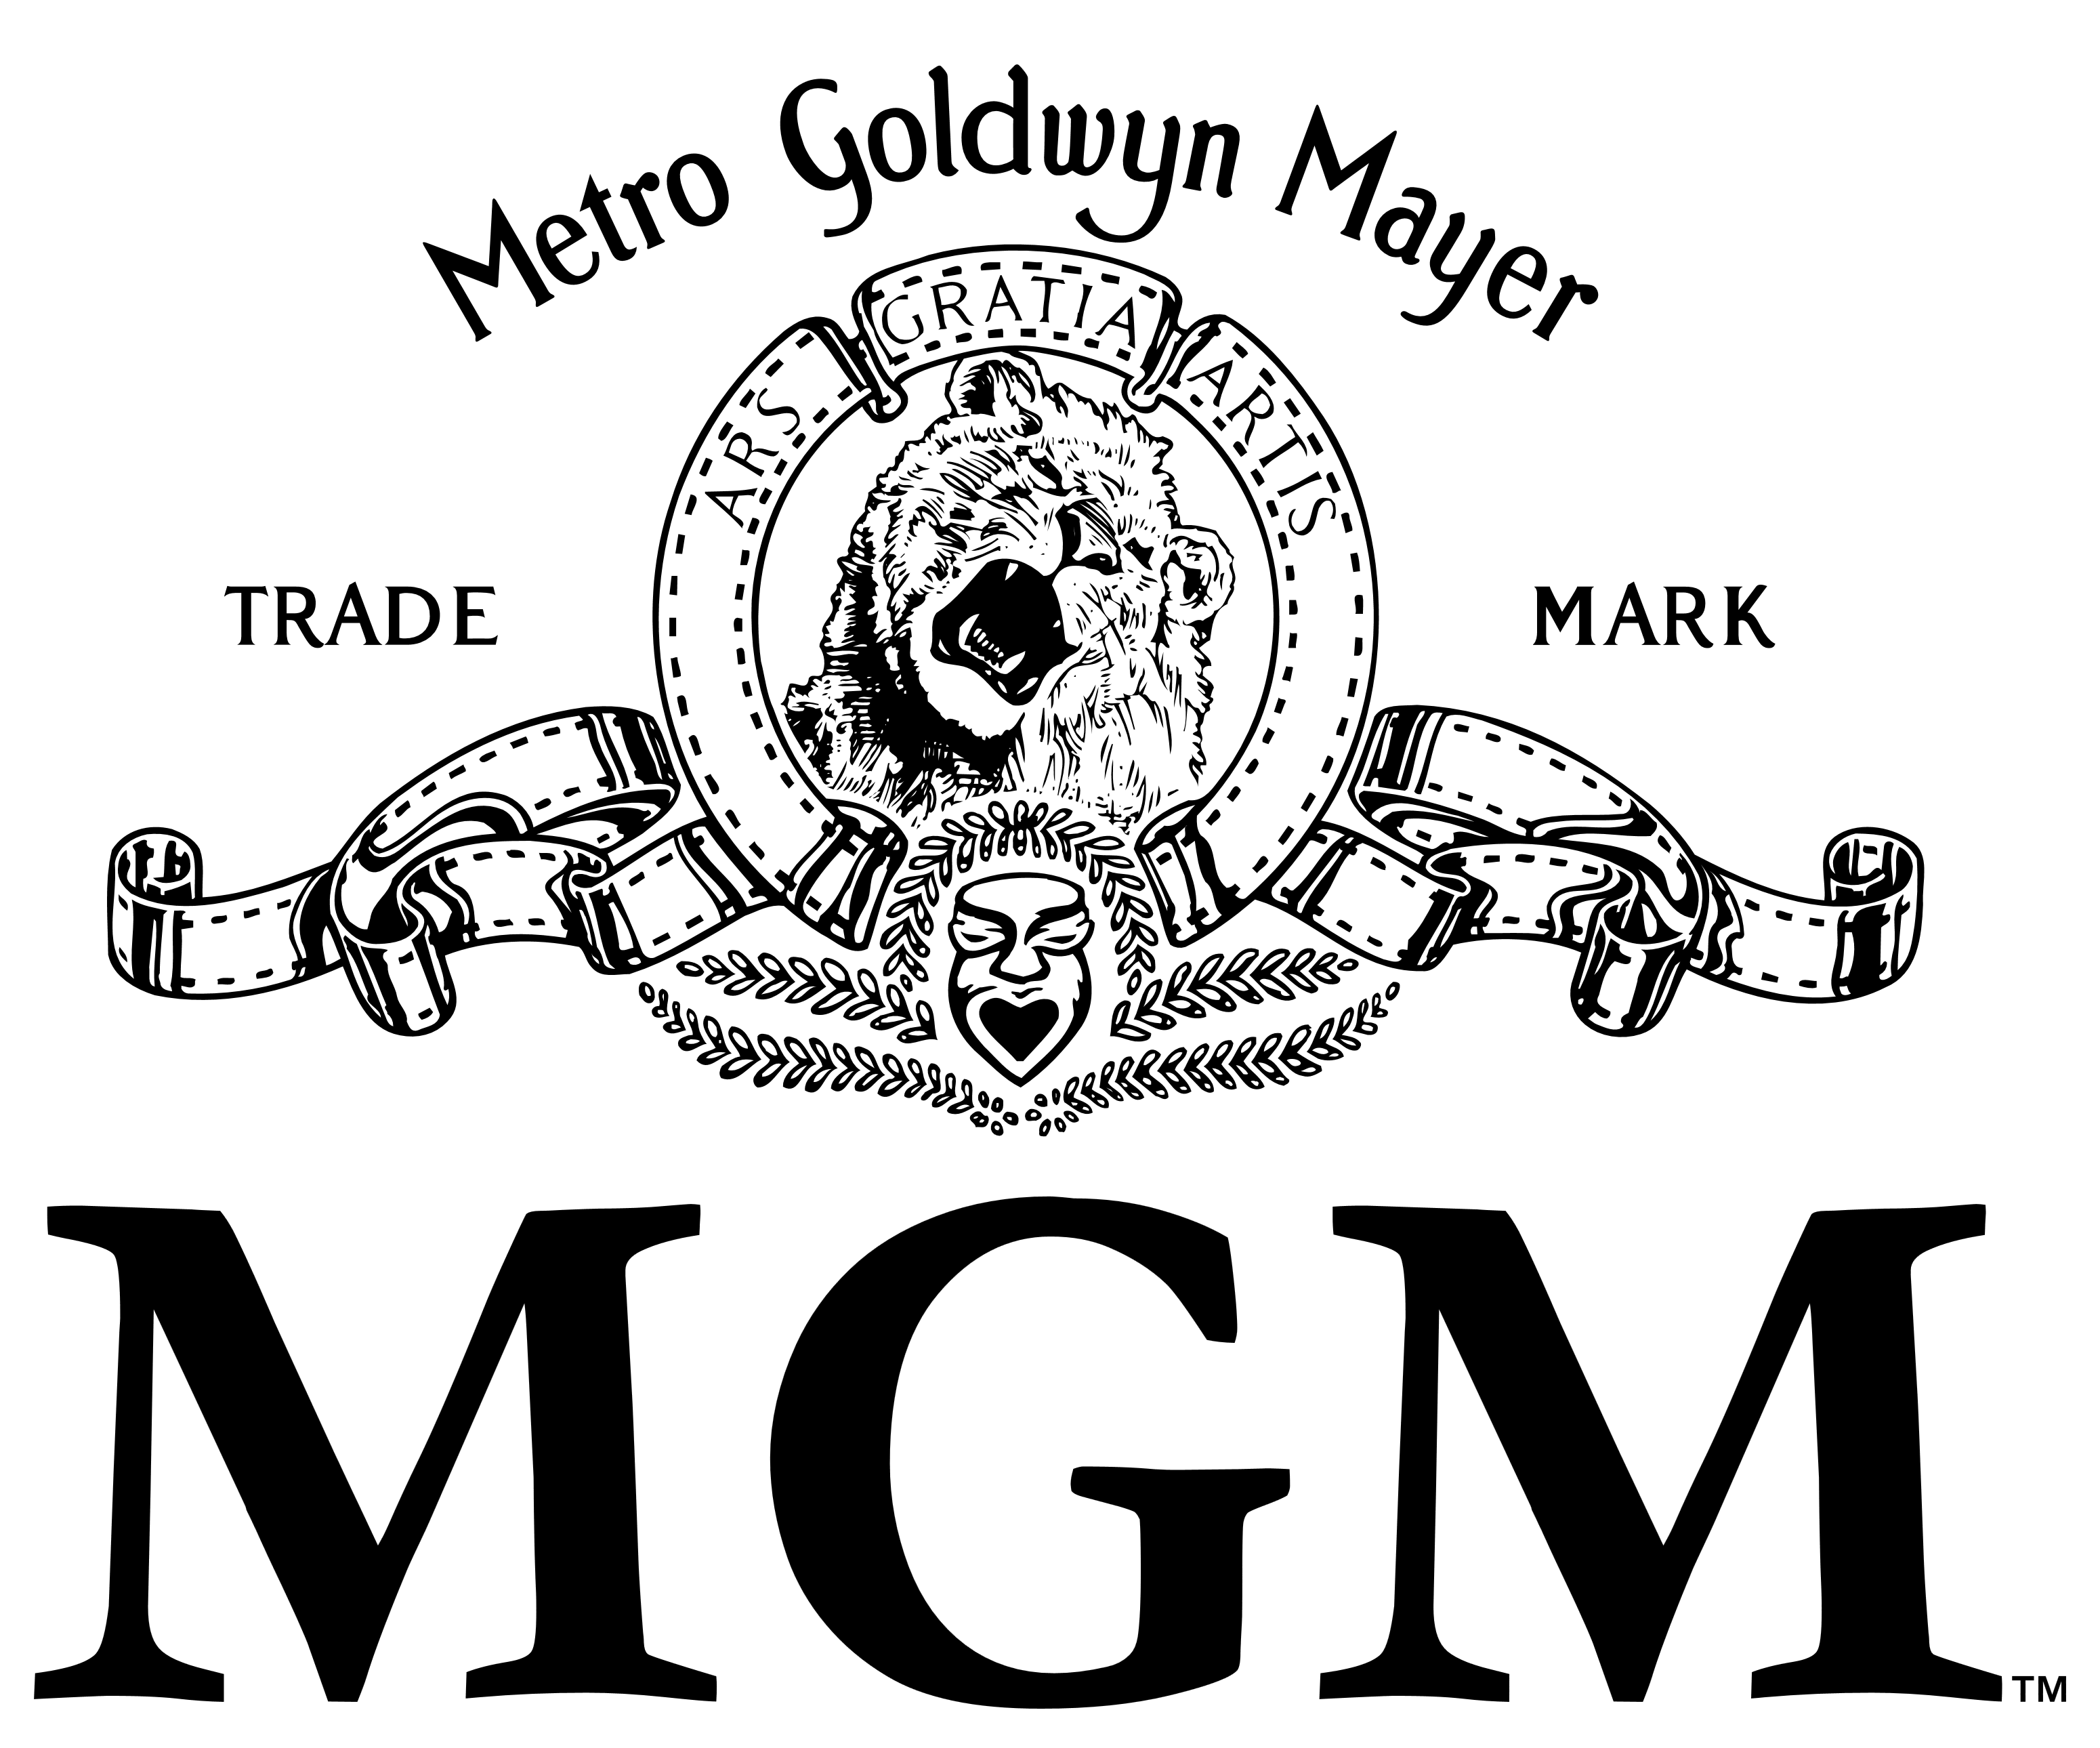 MGM Logo - MGM (Metro Goldwyn Mayer)